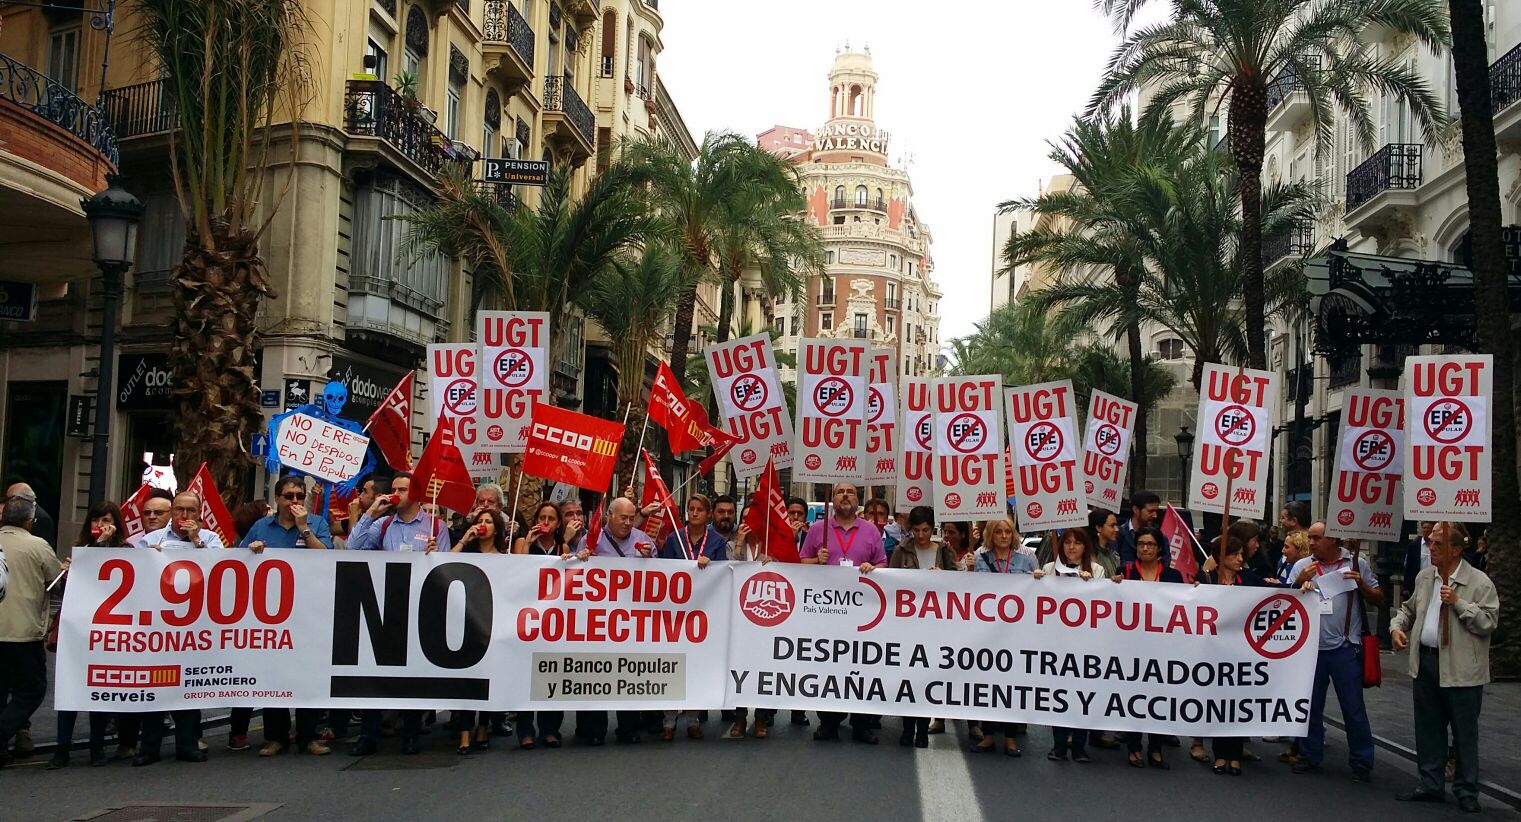 Manifestación UGT en Banco Popular. 13 de octubre de 2016 Valencia.